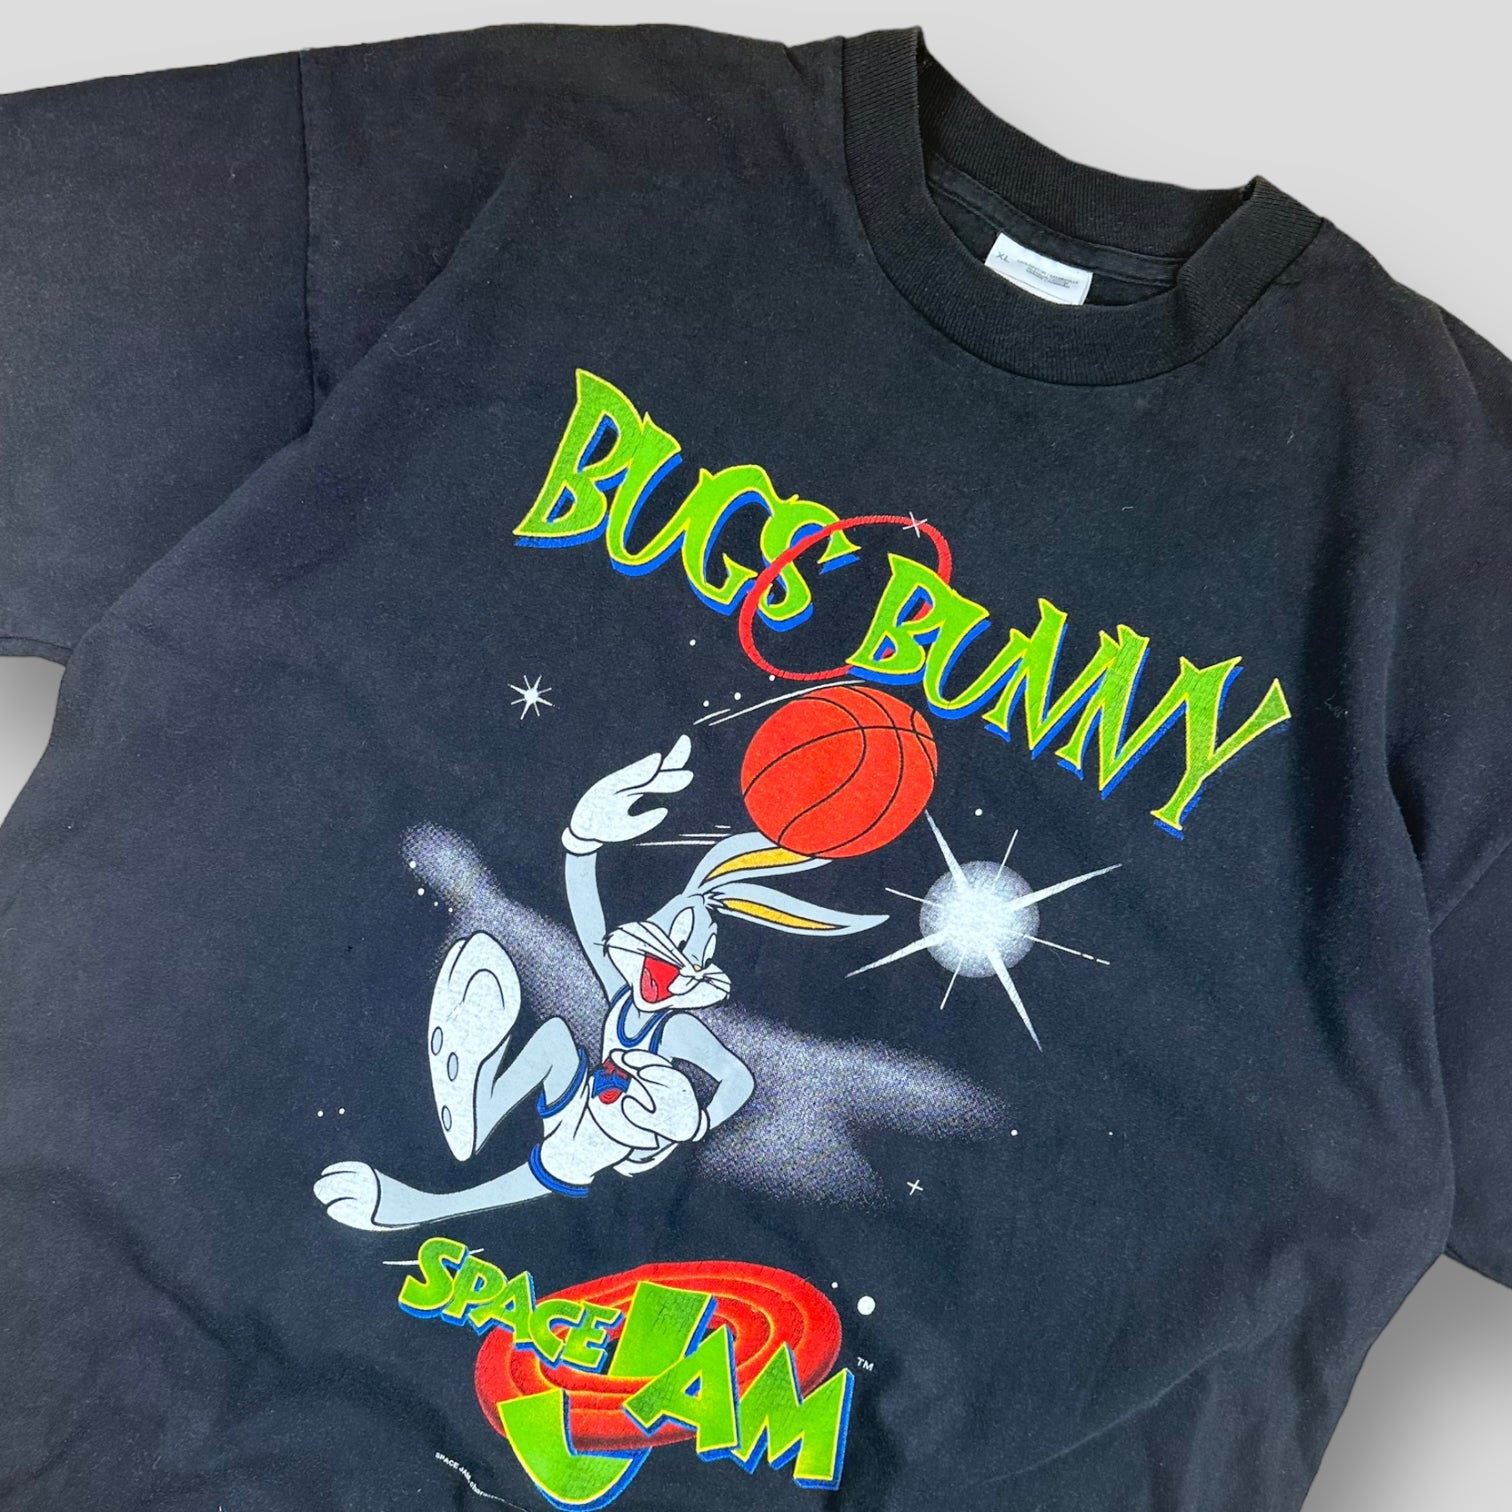 Space Jam t-shirt